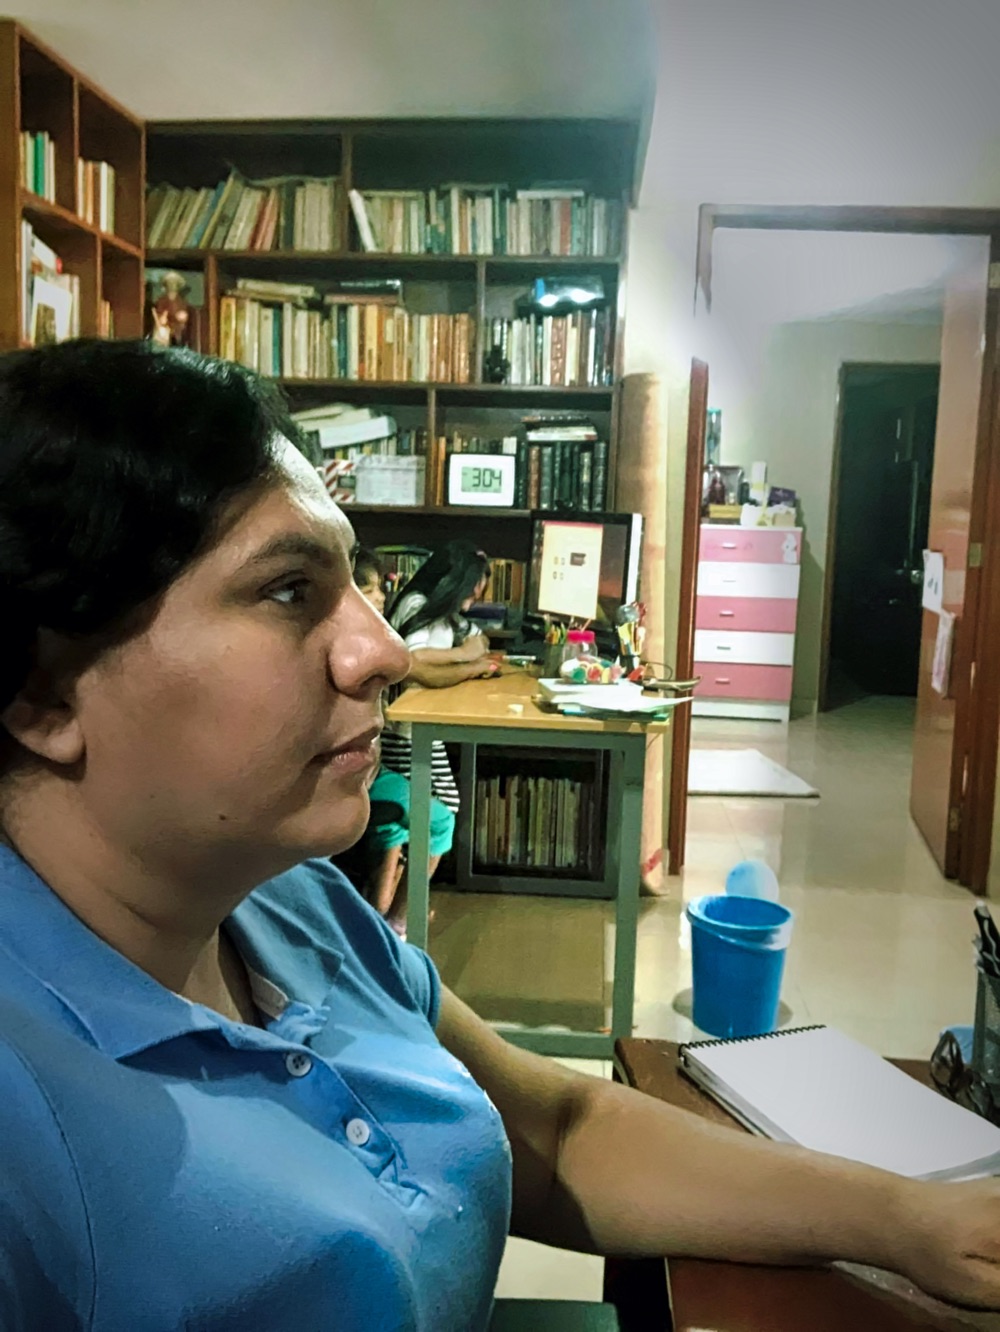 Olivia Leyva deler dagene sine hjemme mellom å undervise via Zoom, forskningsprosjekter og å følge opp datteren på seks år. Hun er ansatt ved instituttet for offentlig forvaltning ved Universidad Autonoma de Guerrero i Mexico. (Foto: privat)